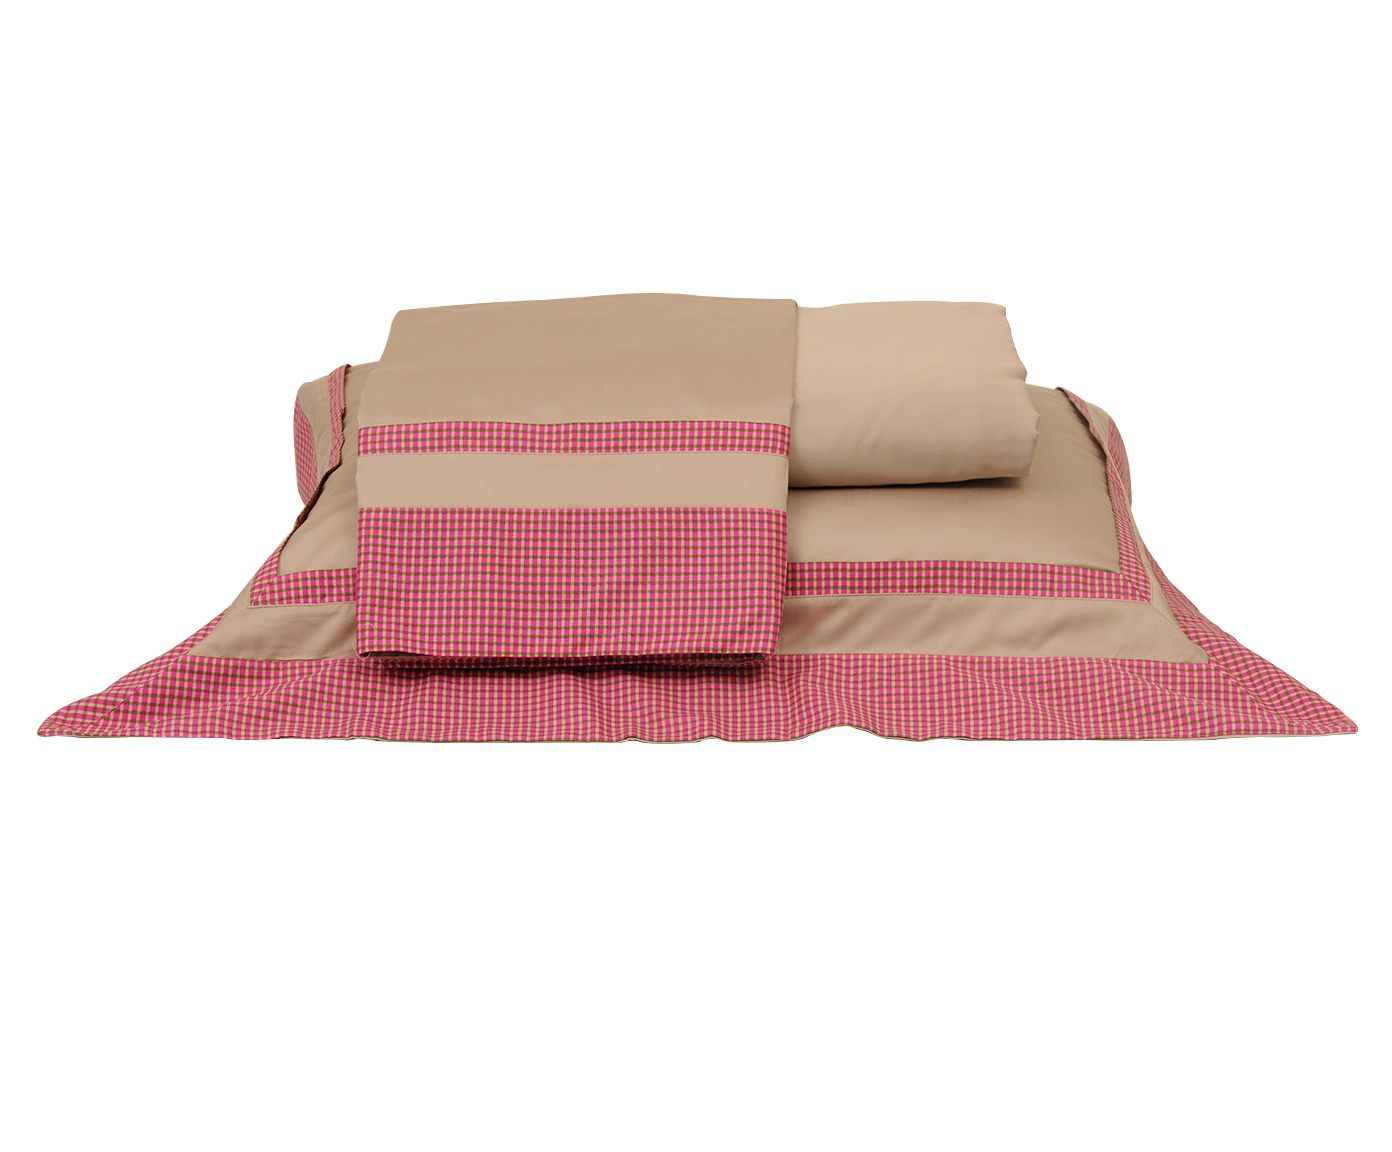 Jogo de lençol vichy absolutê 200 fios - para cama de solteiro | Westwing.com.br